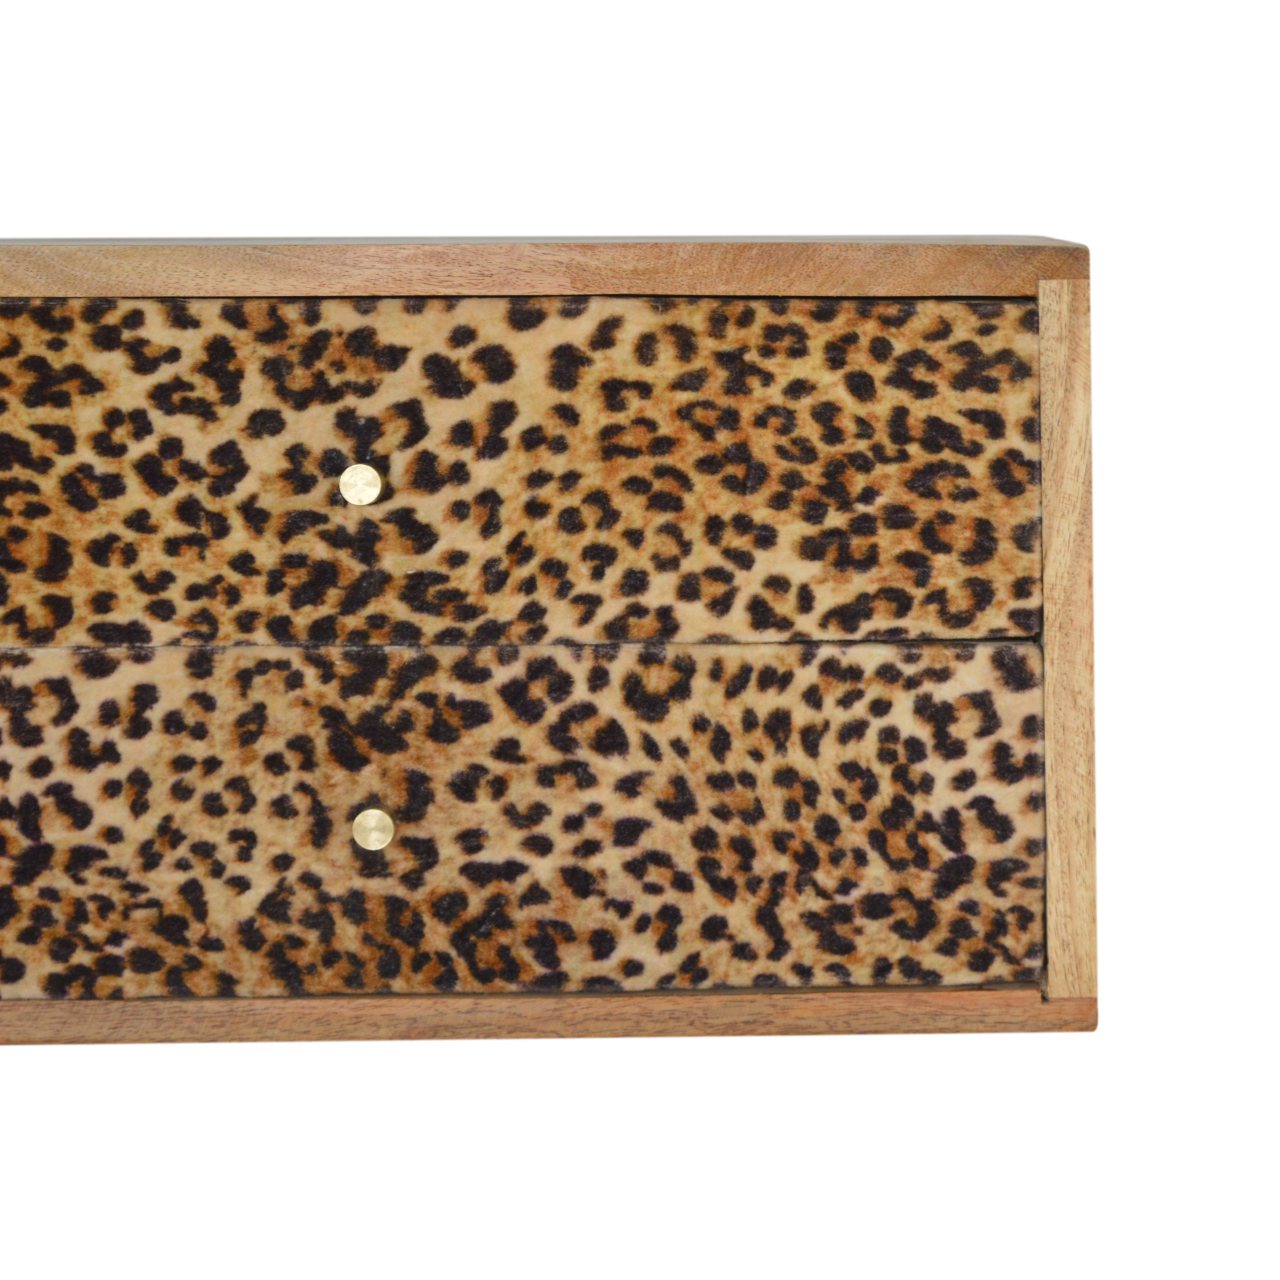 Wandbett mit Leopardenmuster